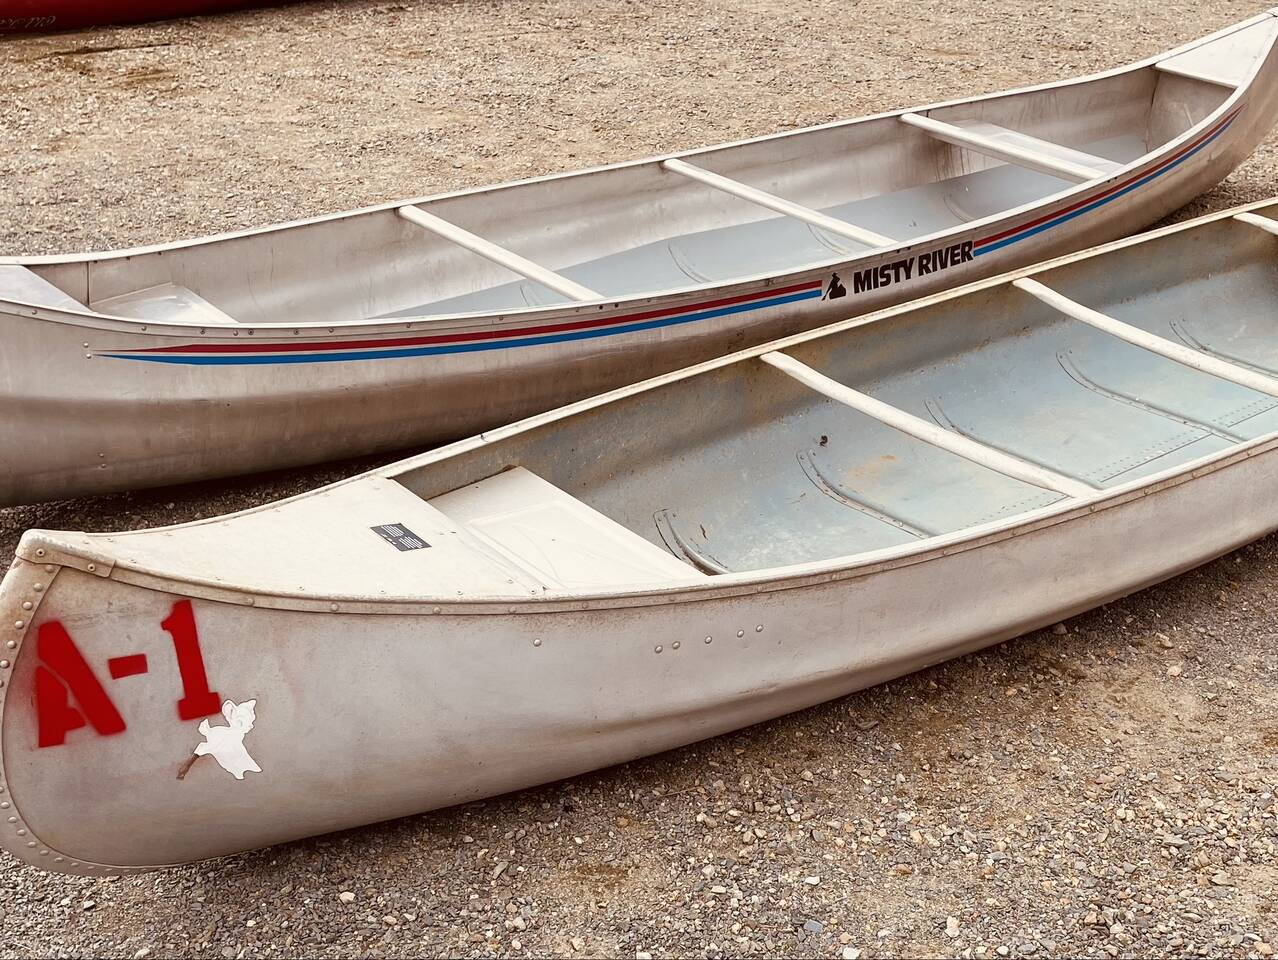 Yep, a 1970's Aluminum Canoe